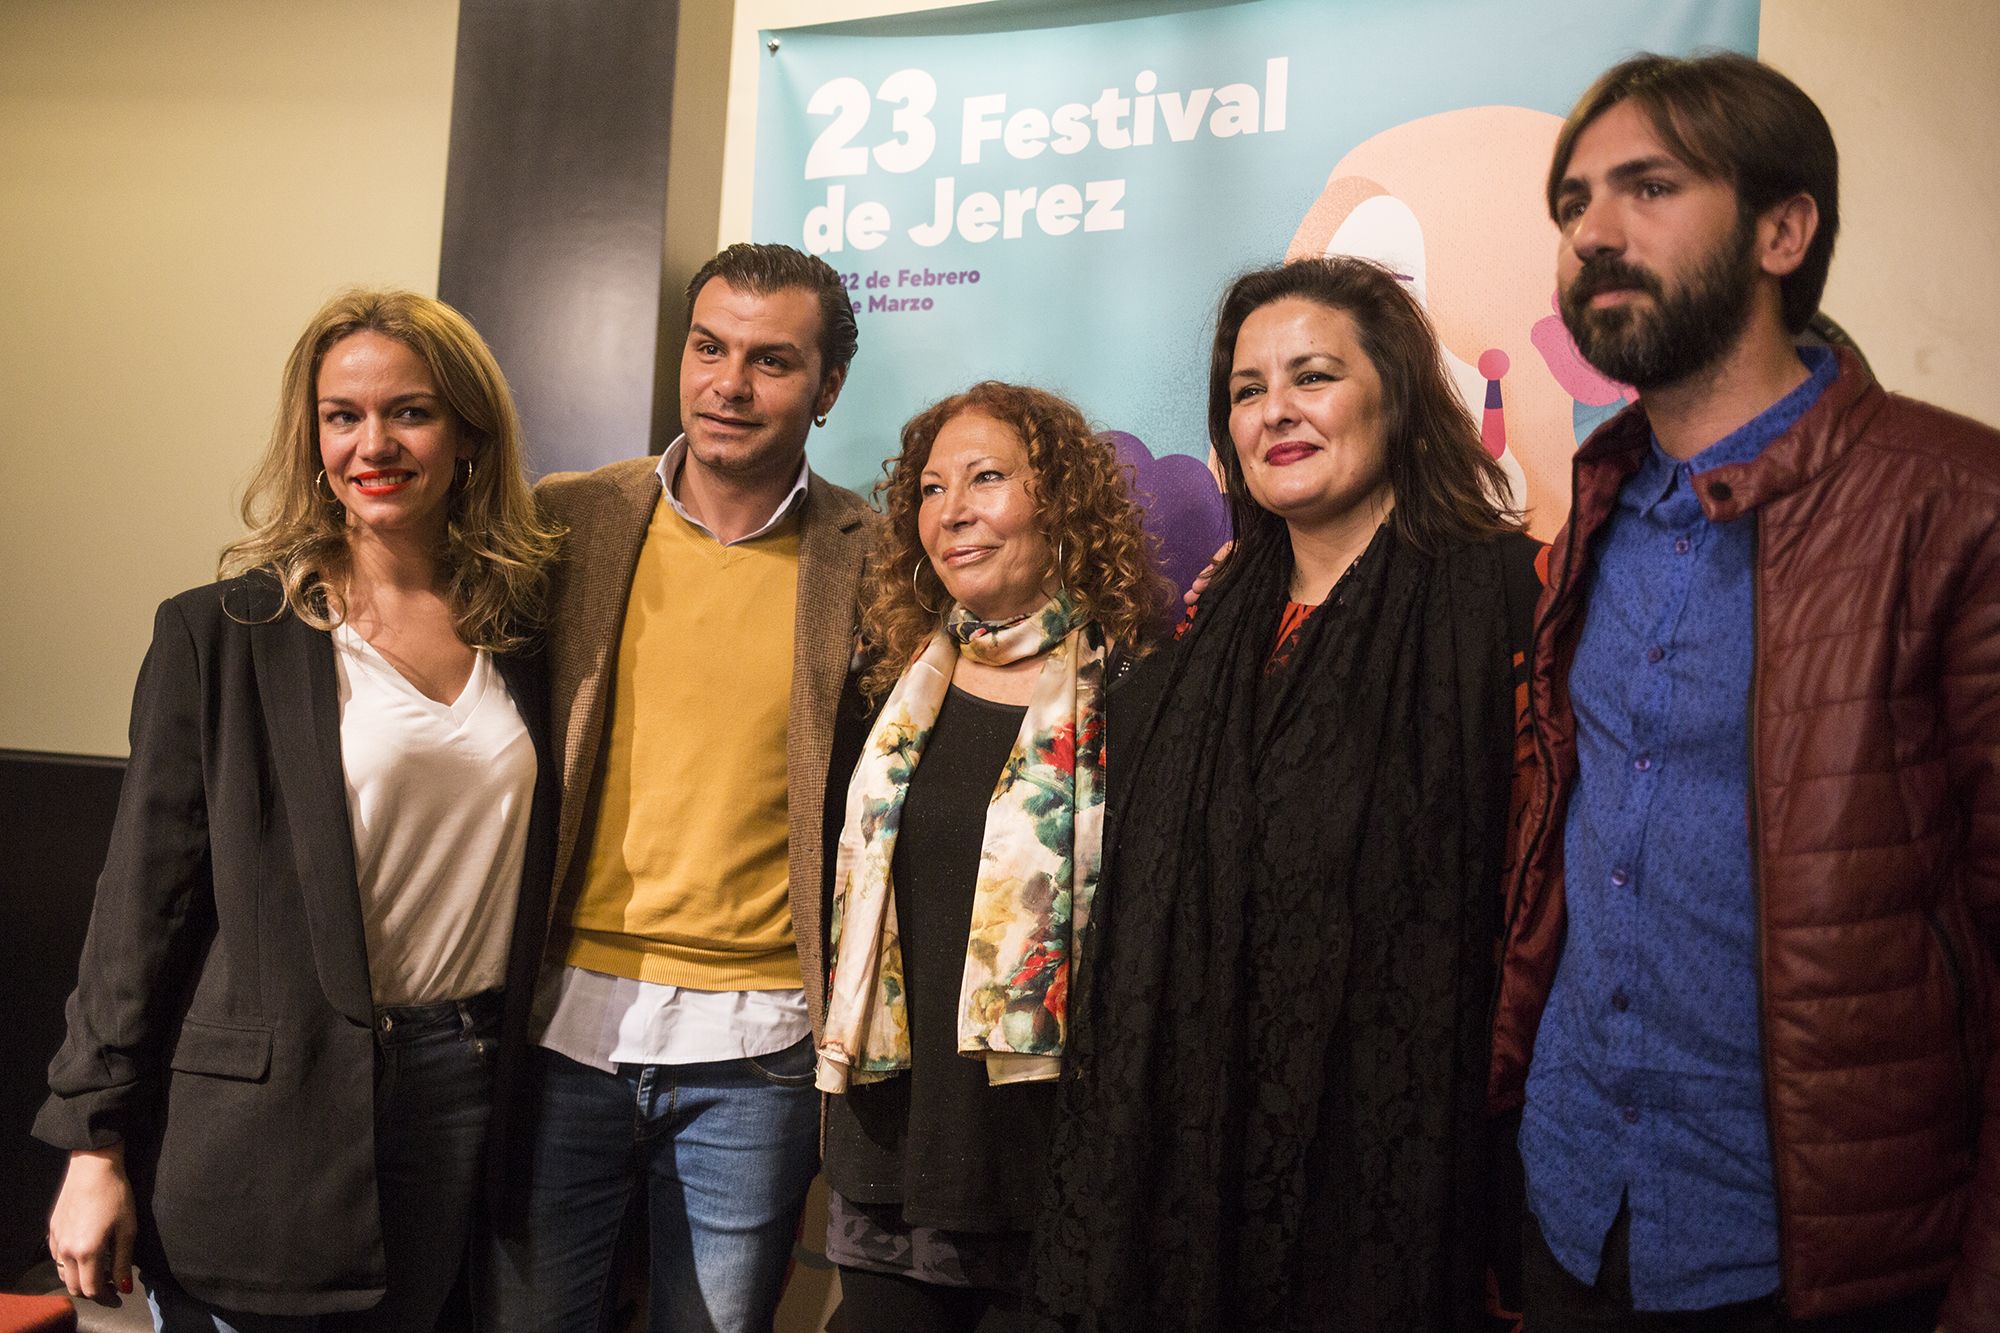 Foto de familia tras la rueda de prensa. FOTO: Javier Fergo para Festival de Jerez